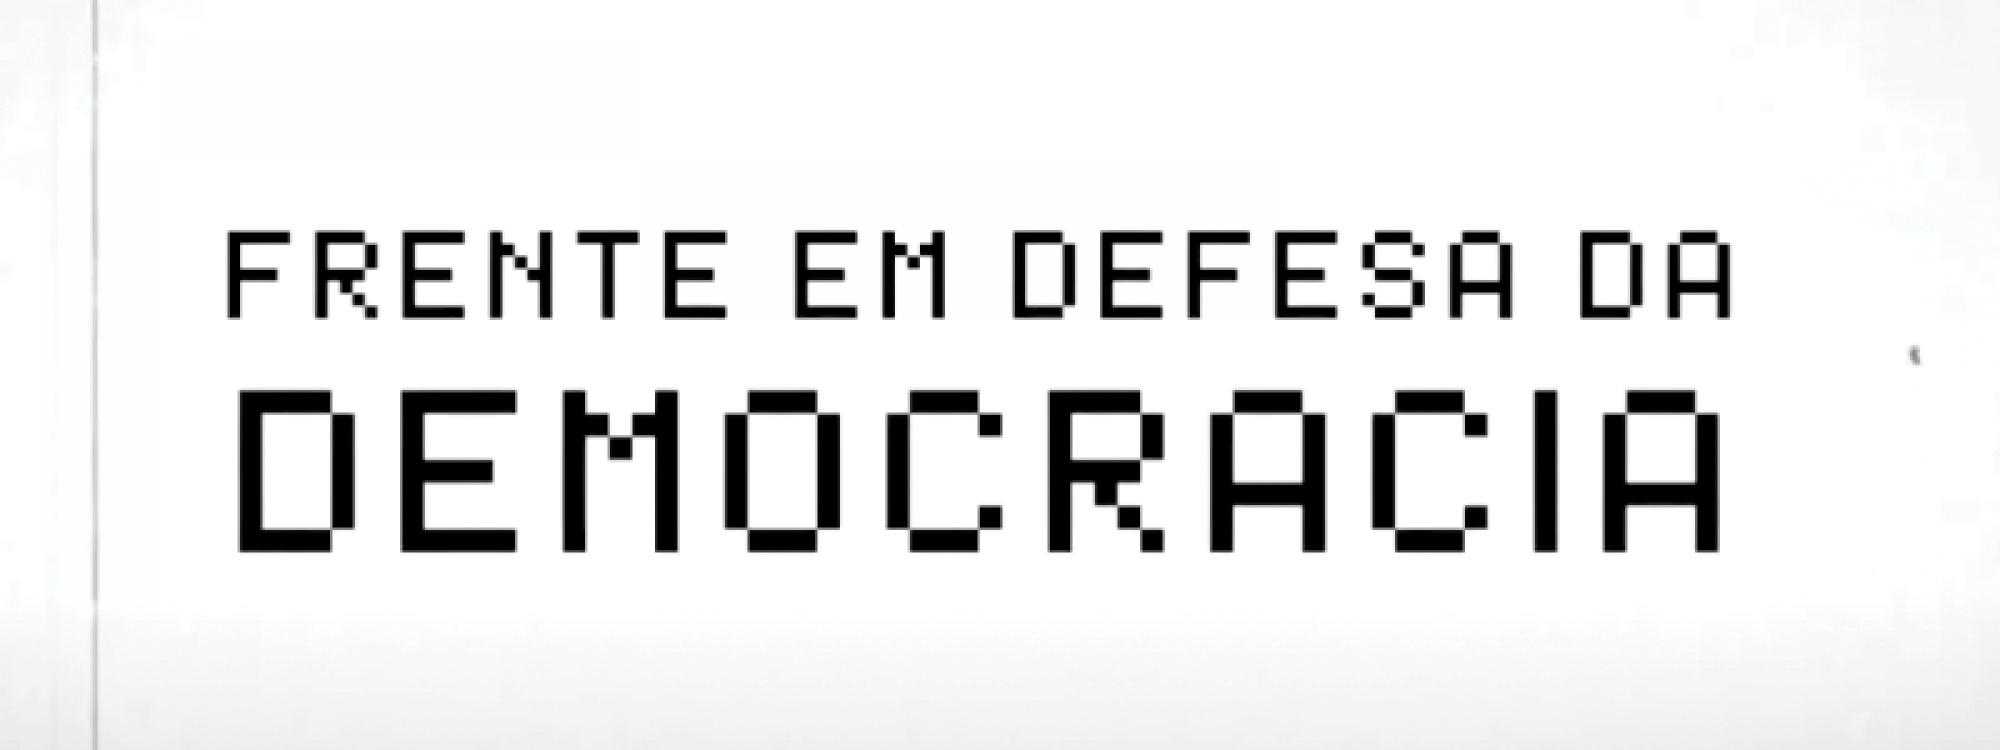 Leia a Carta da Frente em Defesa da Democracia - Triângulo Mineiro